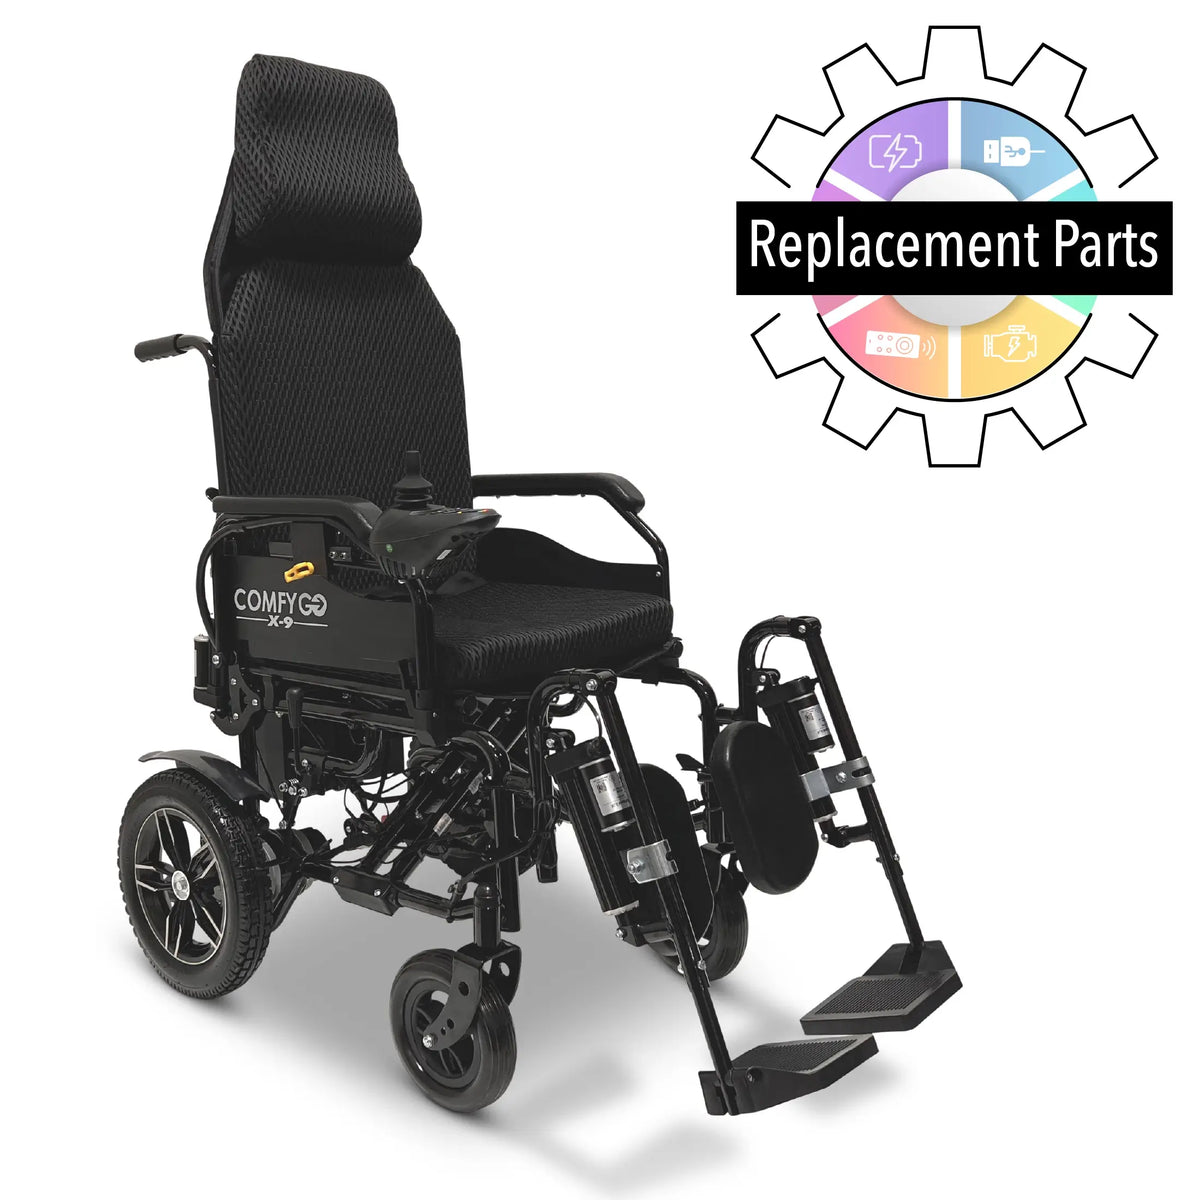 X-9 Vervangingsonderdelen voor elektrische rolstoelen